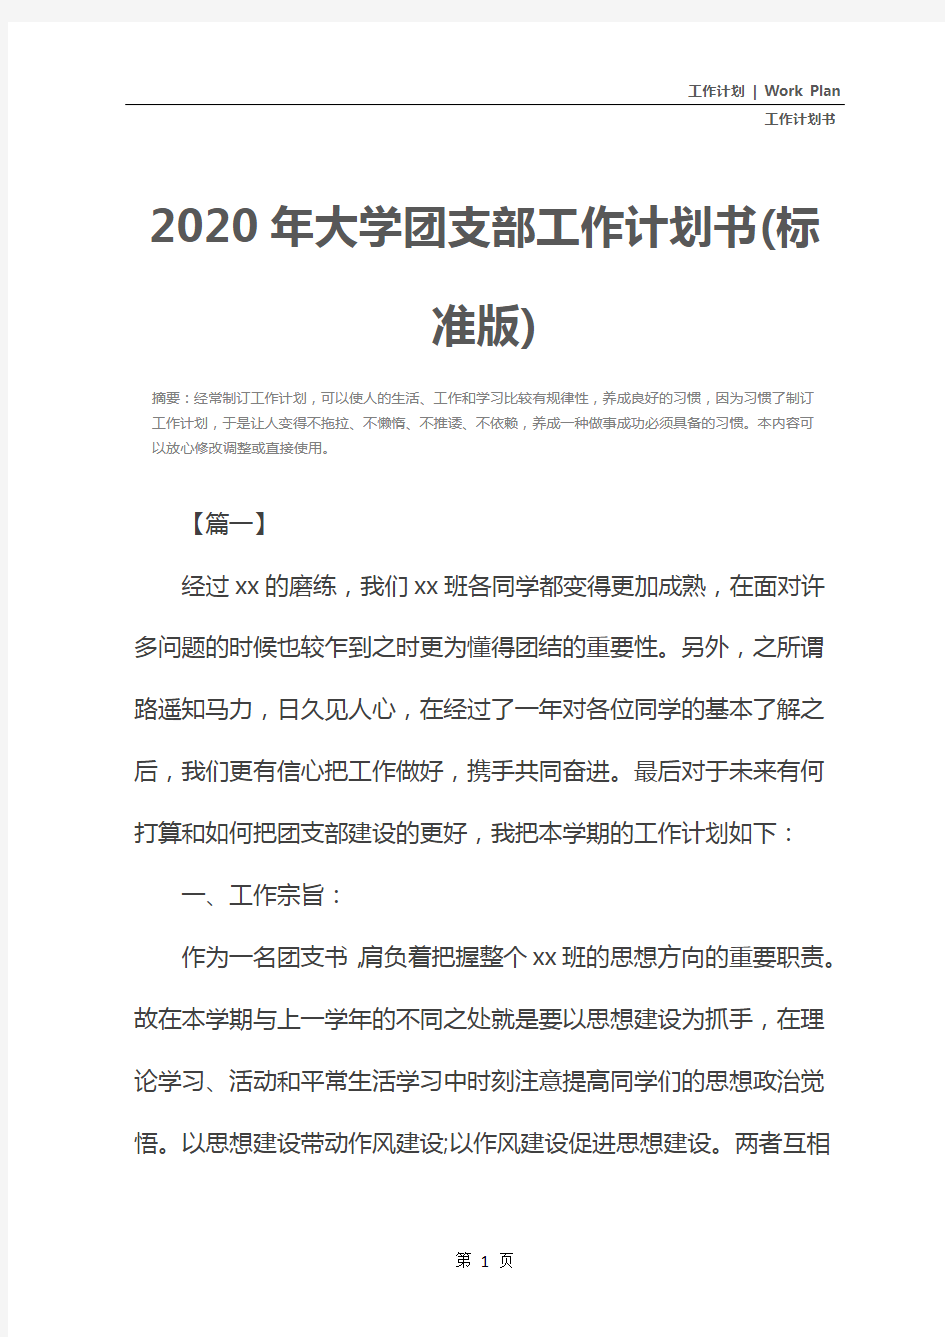 2020年大学团支部工作计划书(标准版)